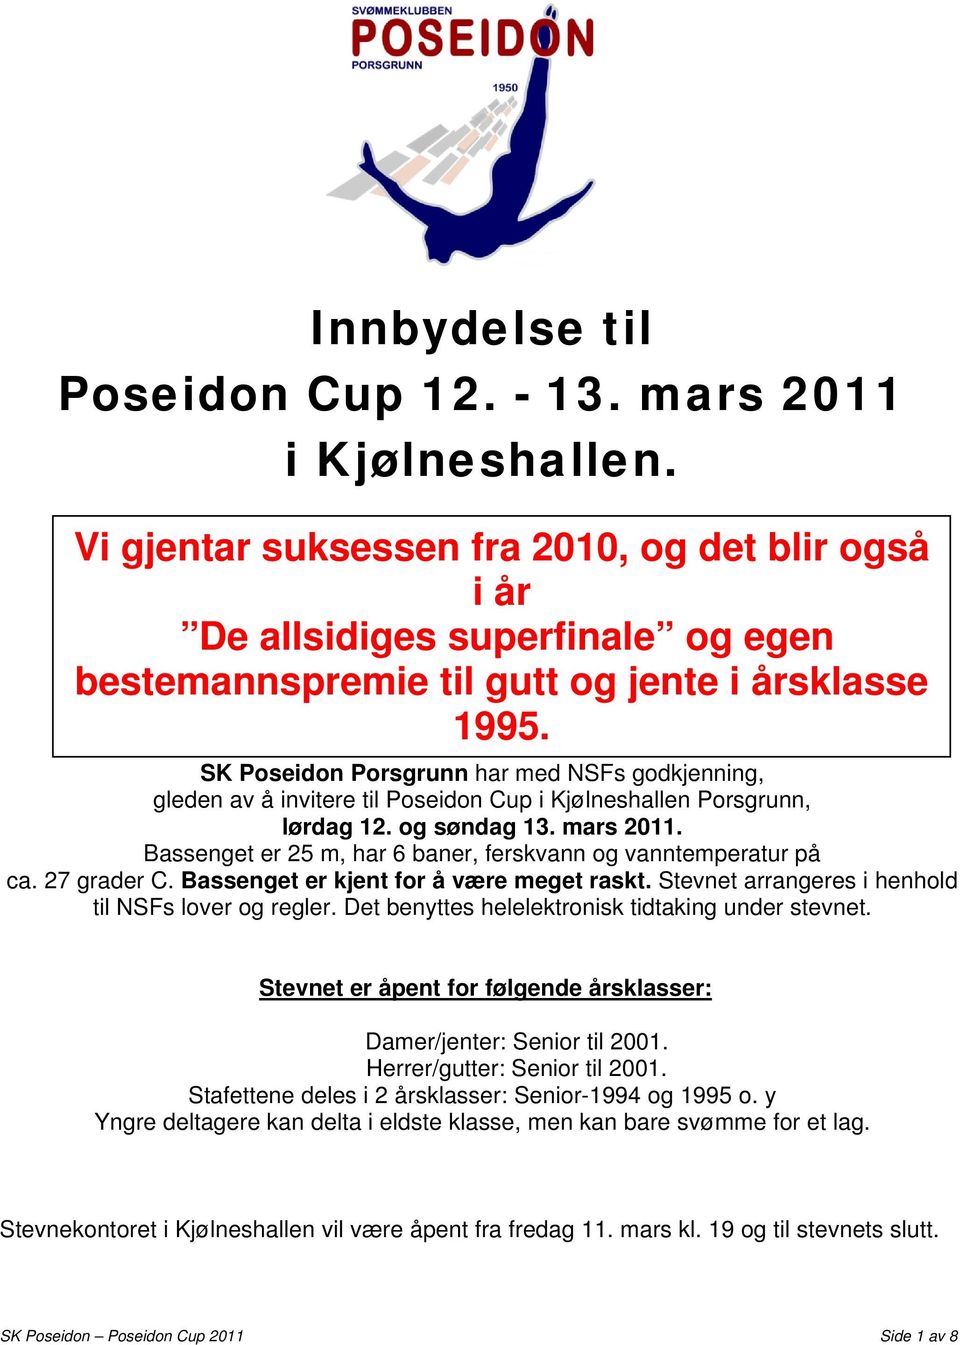 SK Poseidon Porsgrunn har med NSFs godkjenning, gleden av å invitere til Poseidon Cup i Kjølneshallen Porsgrunn, lørdag 12. og søndag 13. mars 2011.